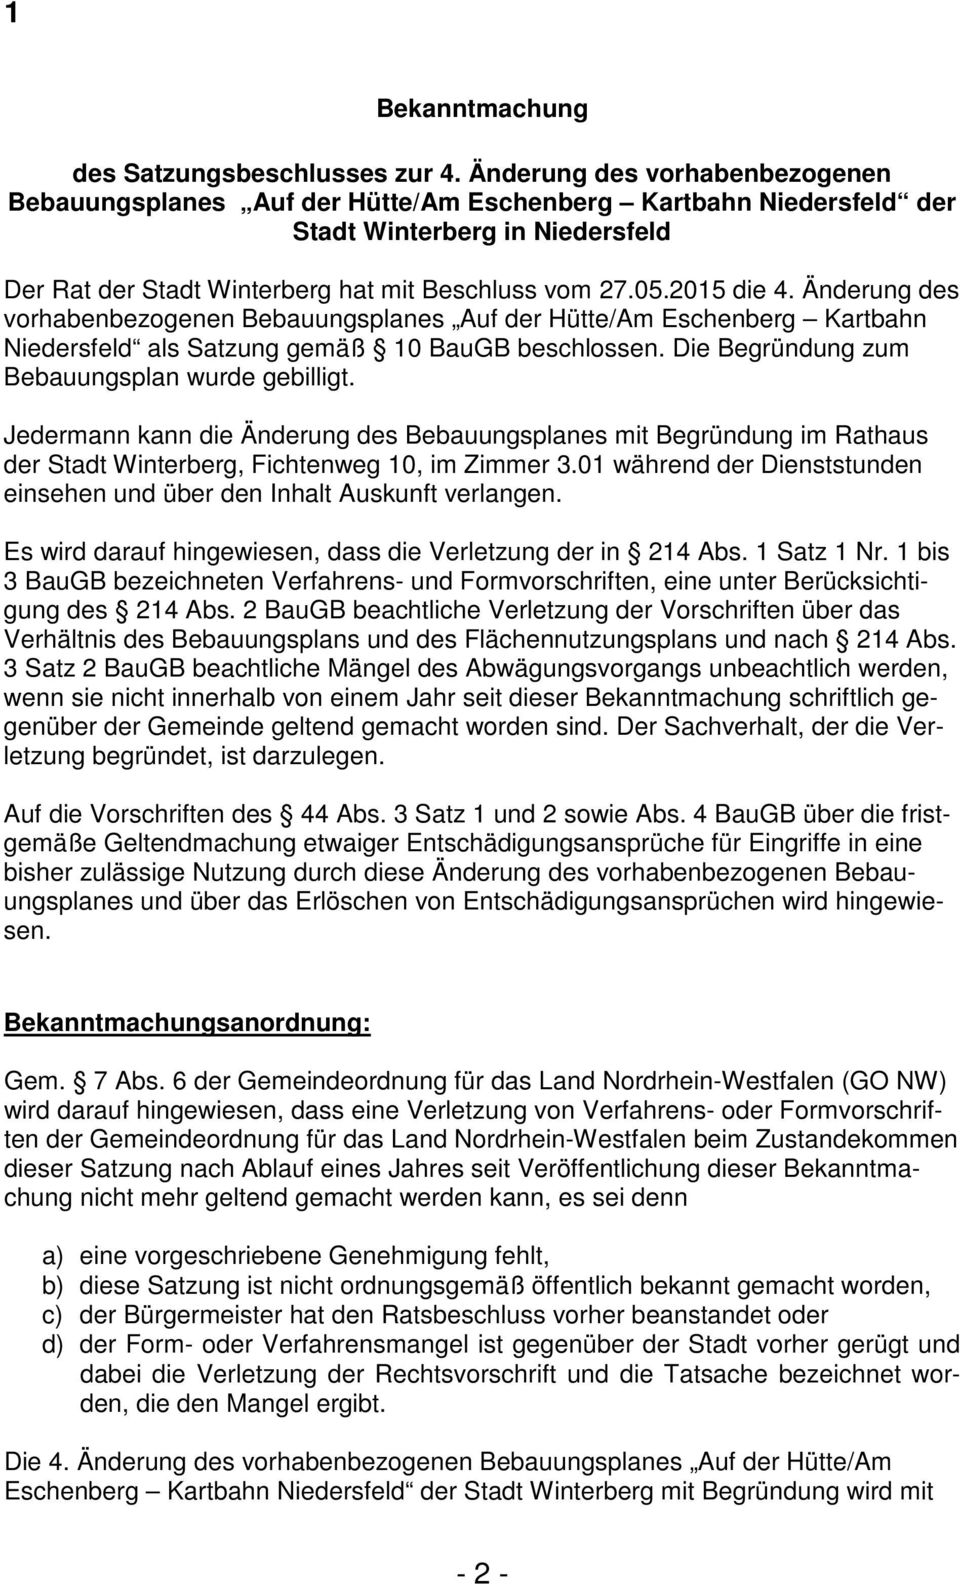 Änderung des vorhabenbezogenen Bebauungsplanes Auf der Hütte/Am Eschenberg Kartbahn Niedersfeld als Satzung gemäß 10 BauGB beschlossen. Die Begründung zum Bebauungsplan wurde gebilligt.